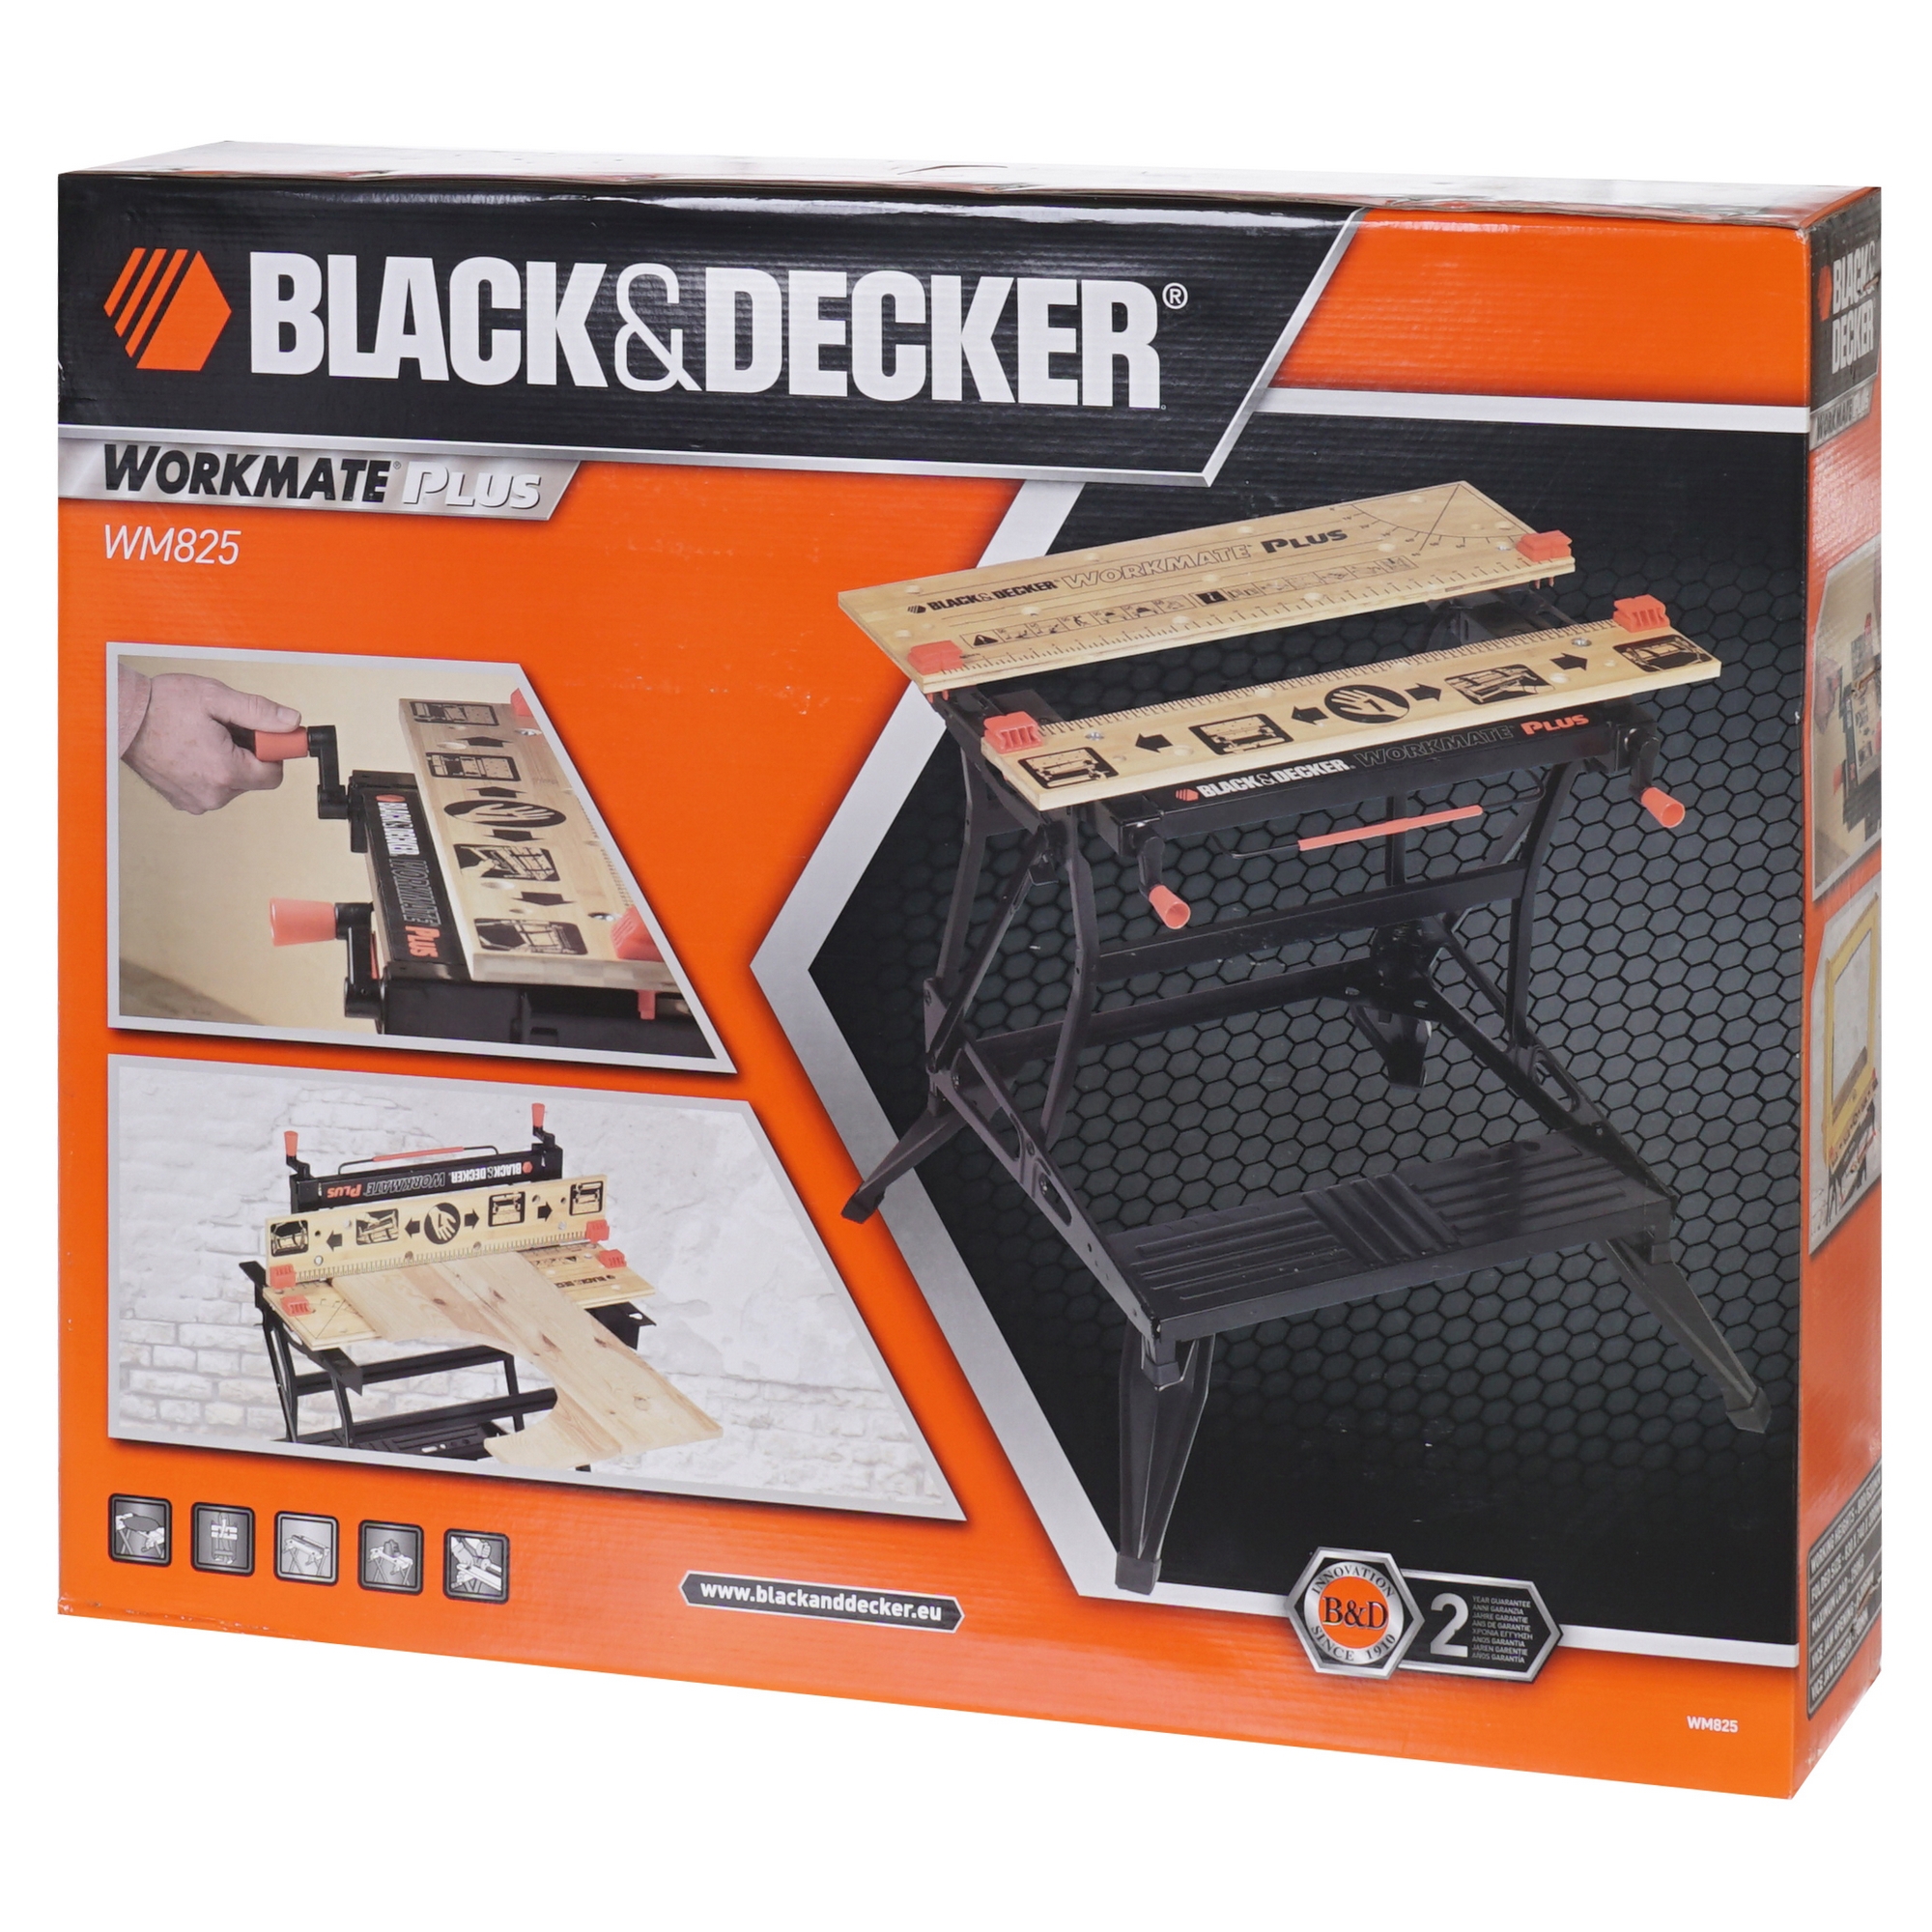 Black+Decker wm525